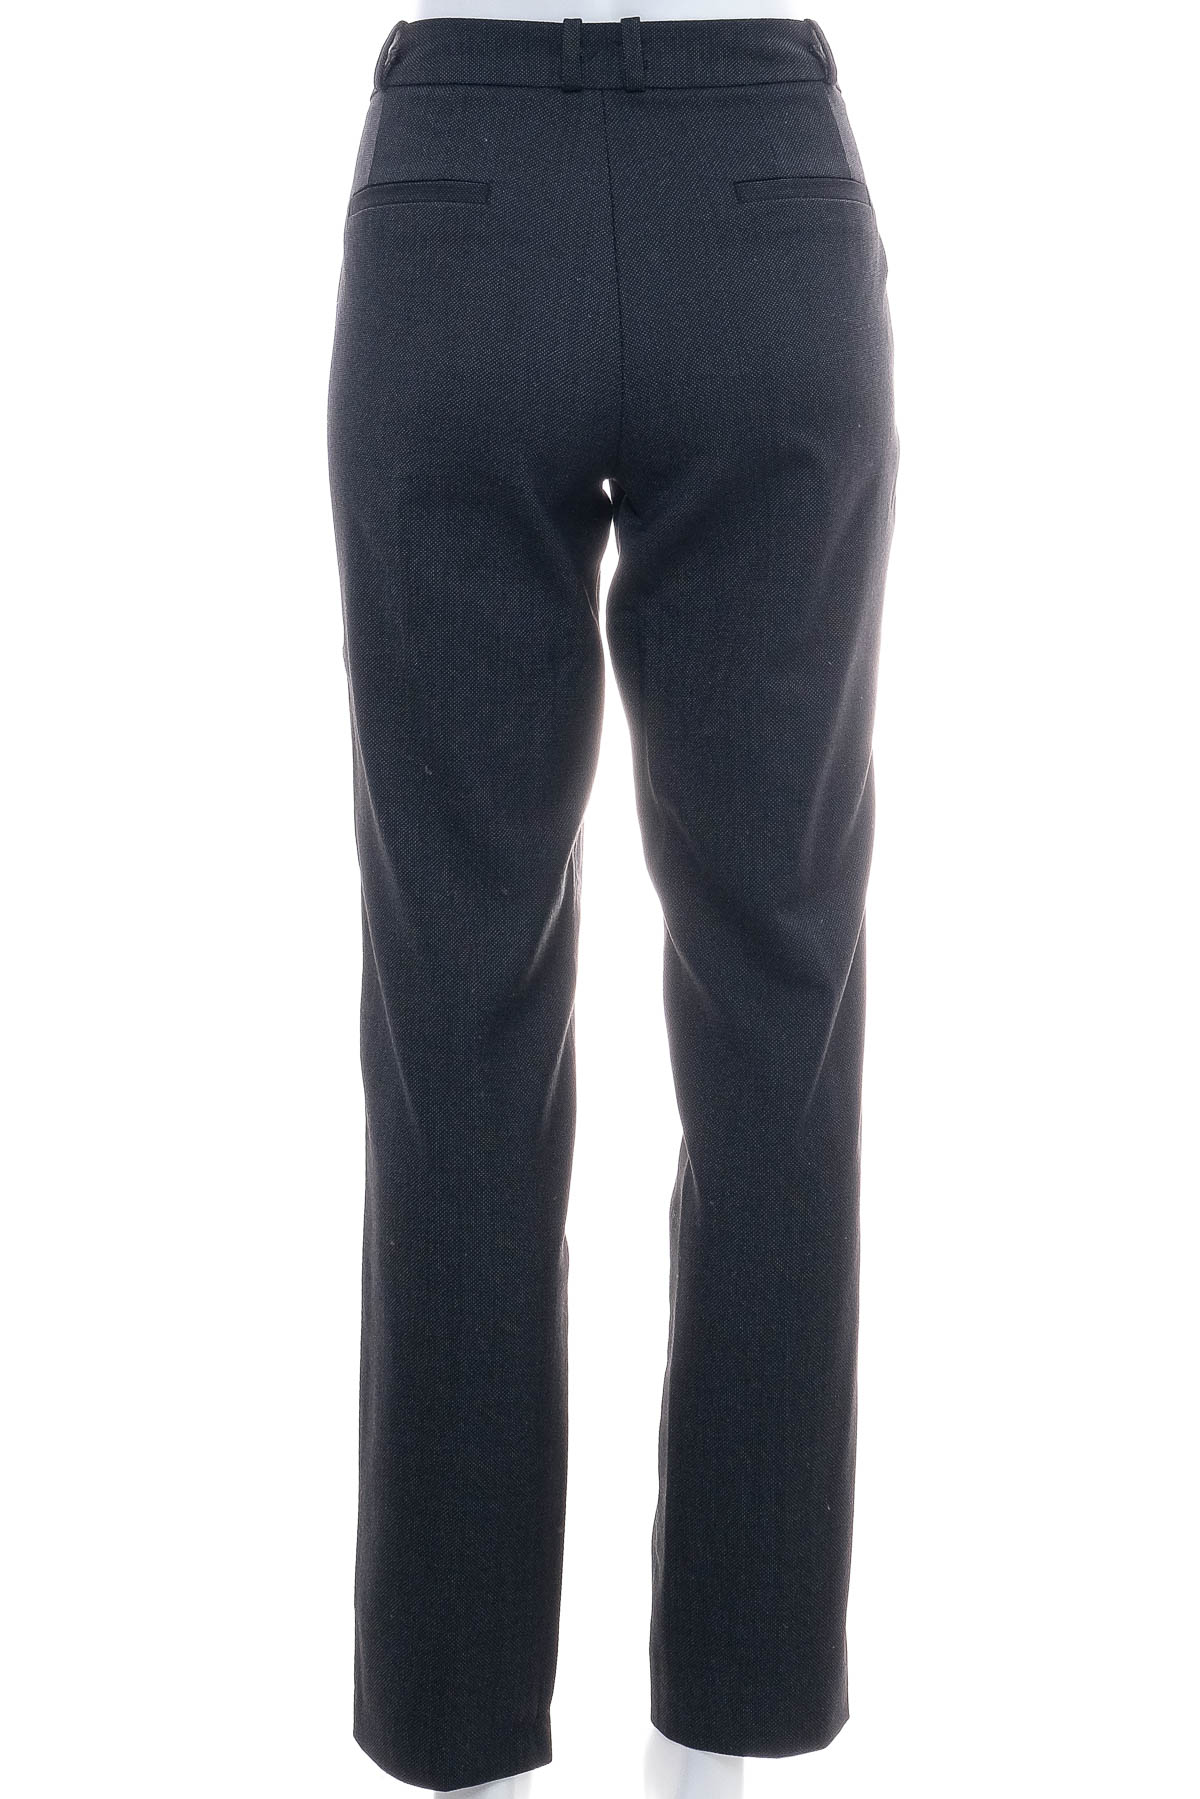 Pantaloni de damă - ESPRIT - 1